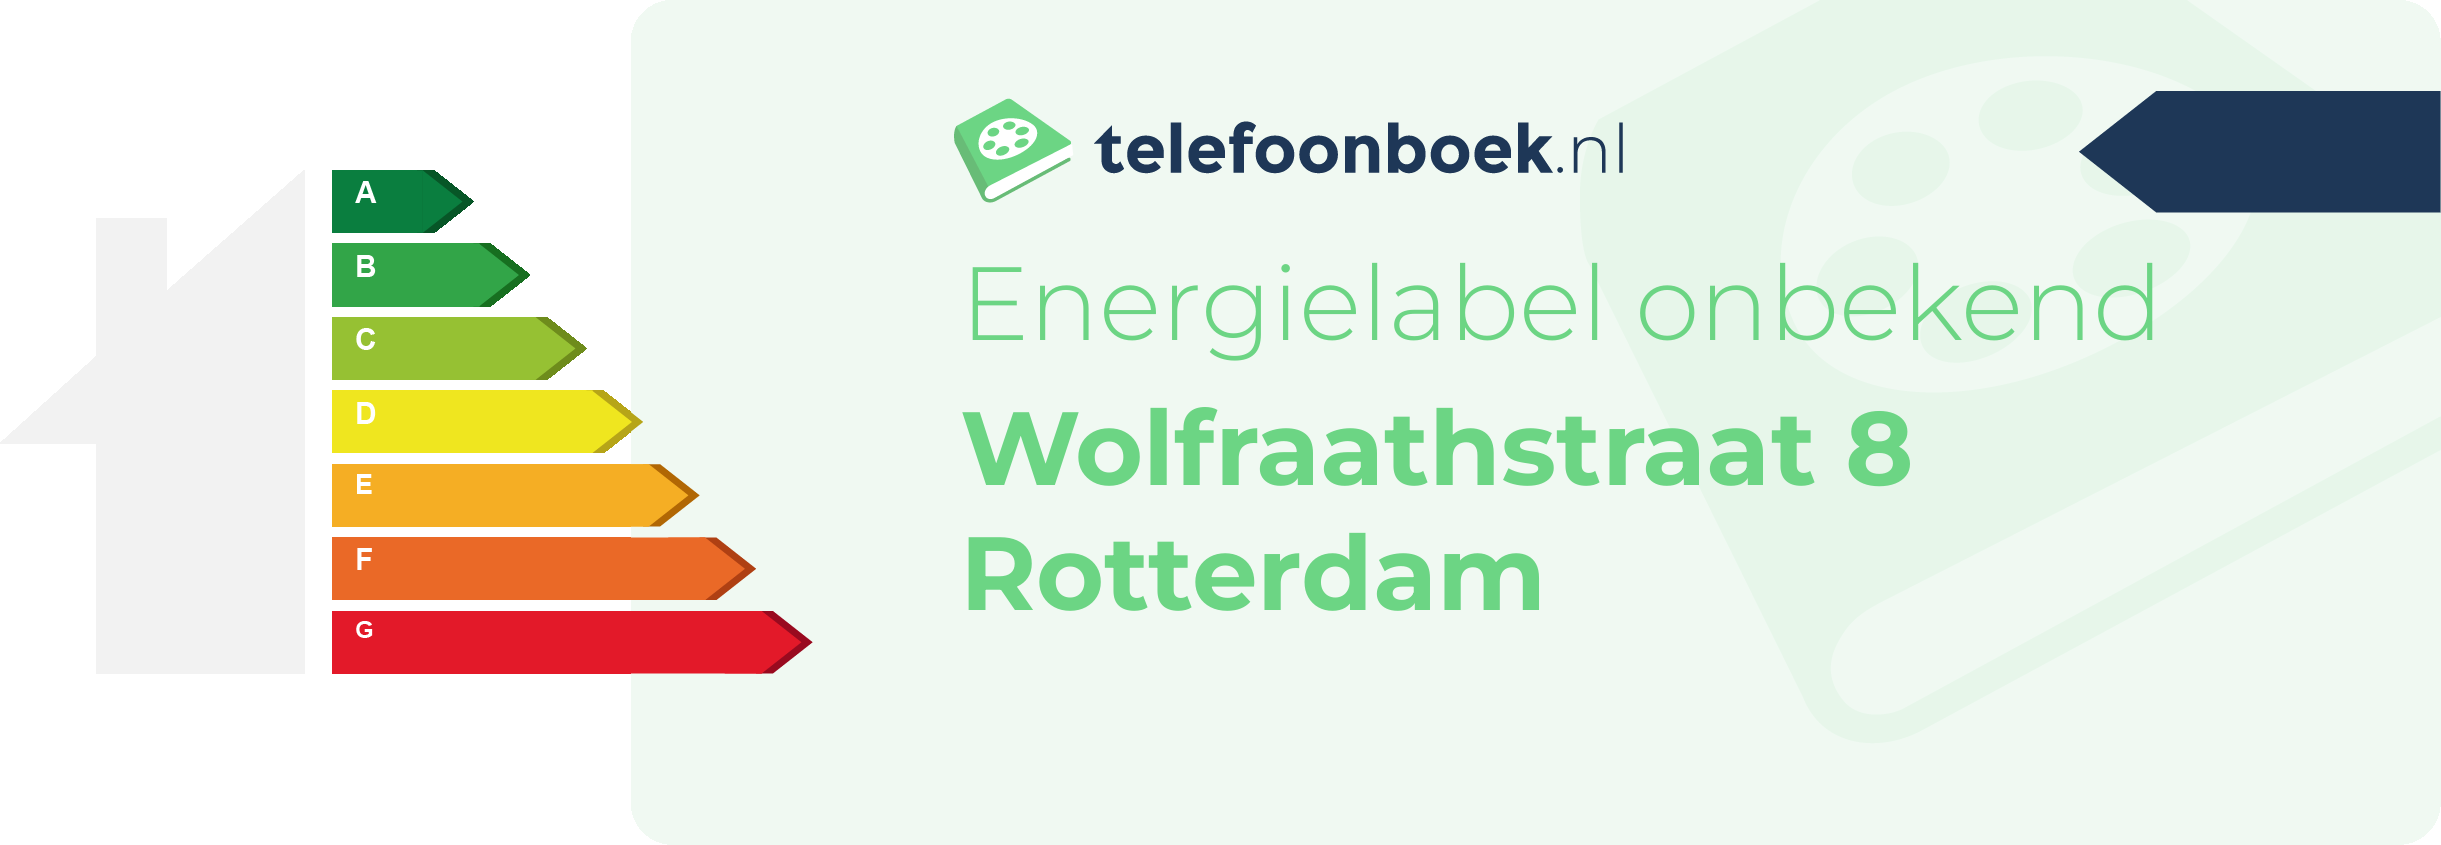 Energielabel Wolfraathstraat 8 Rotterdam